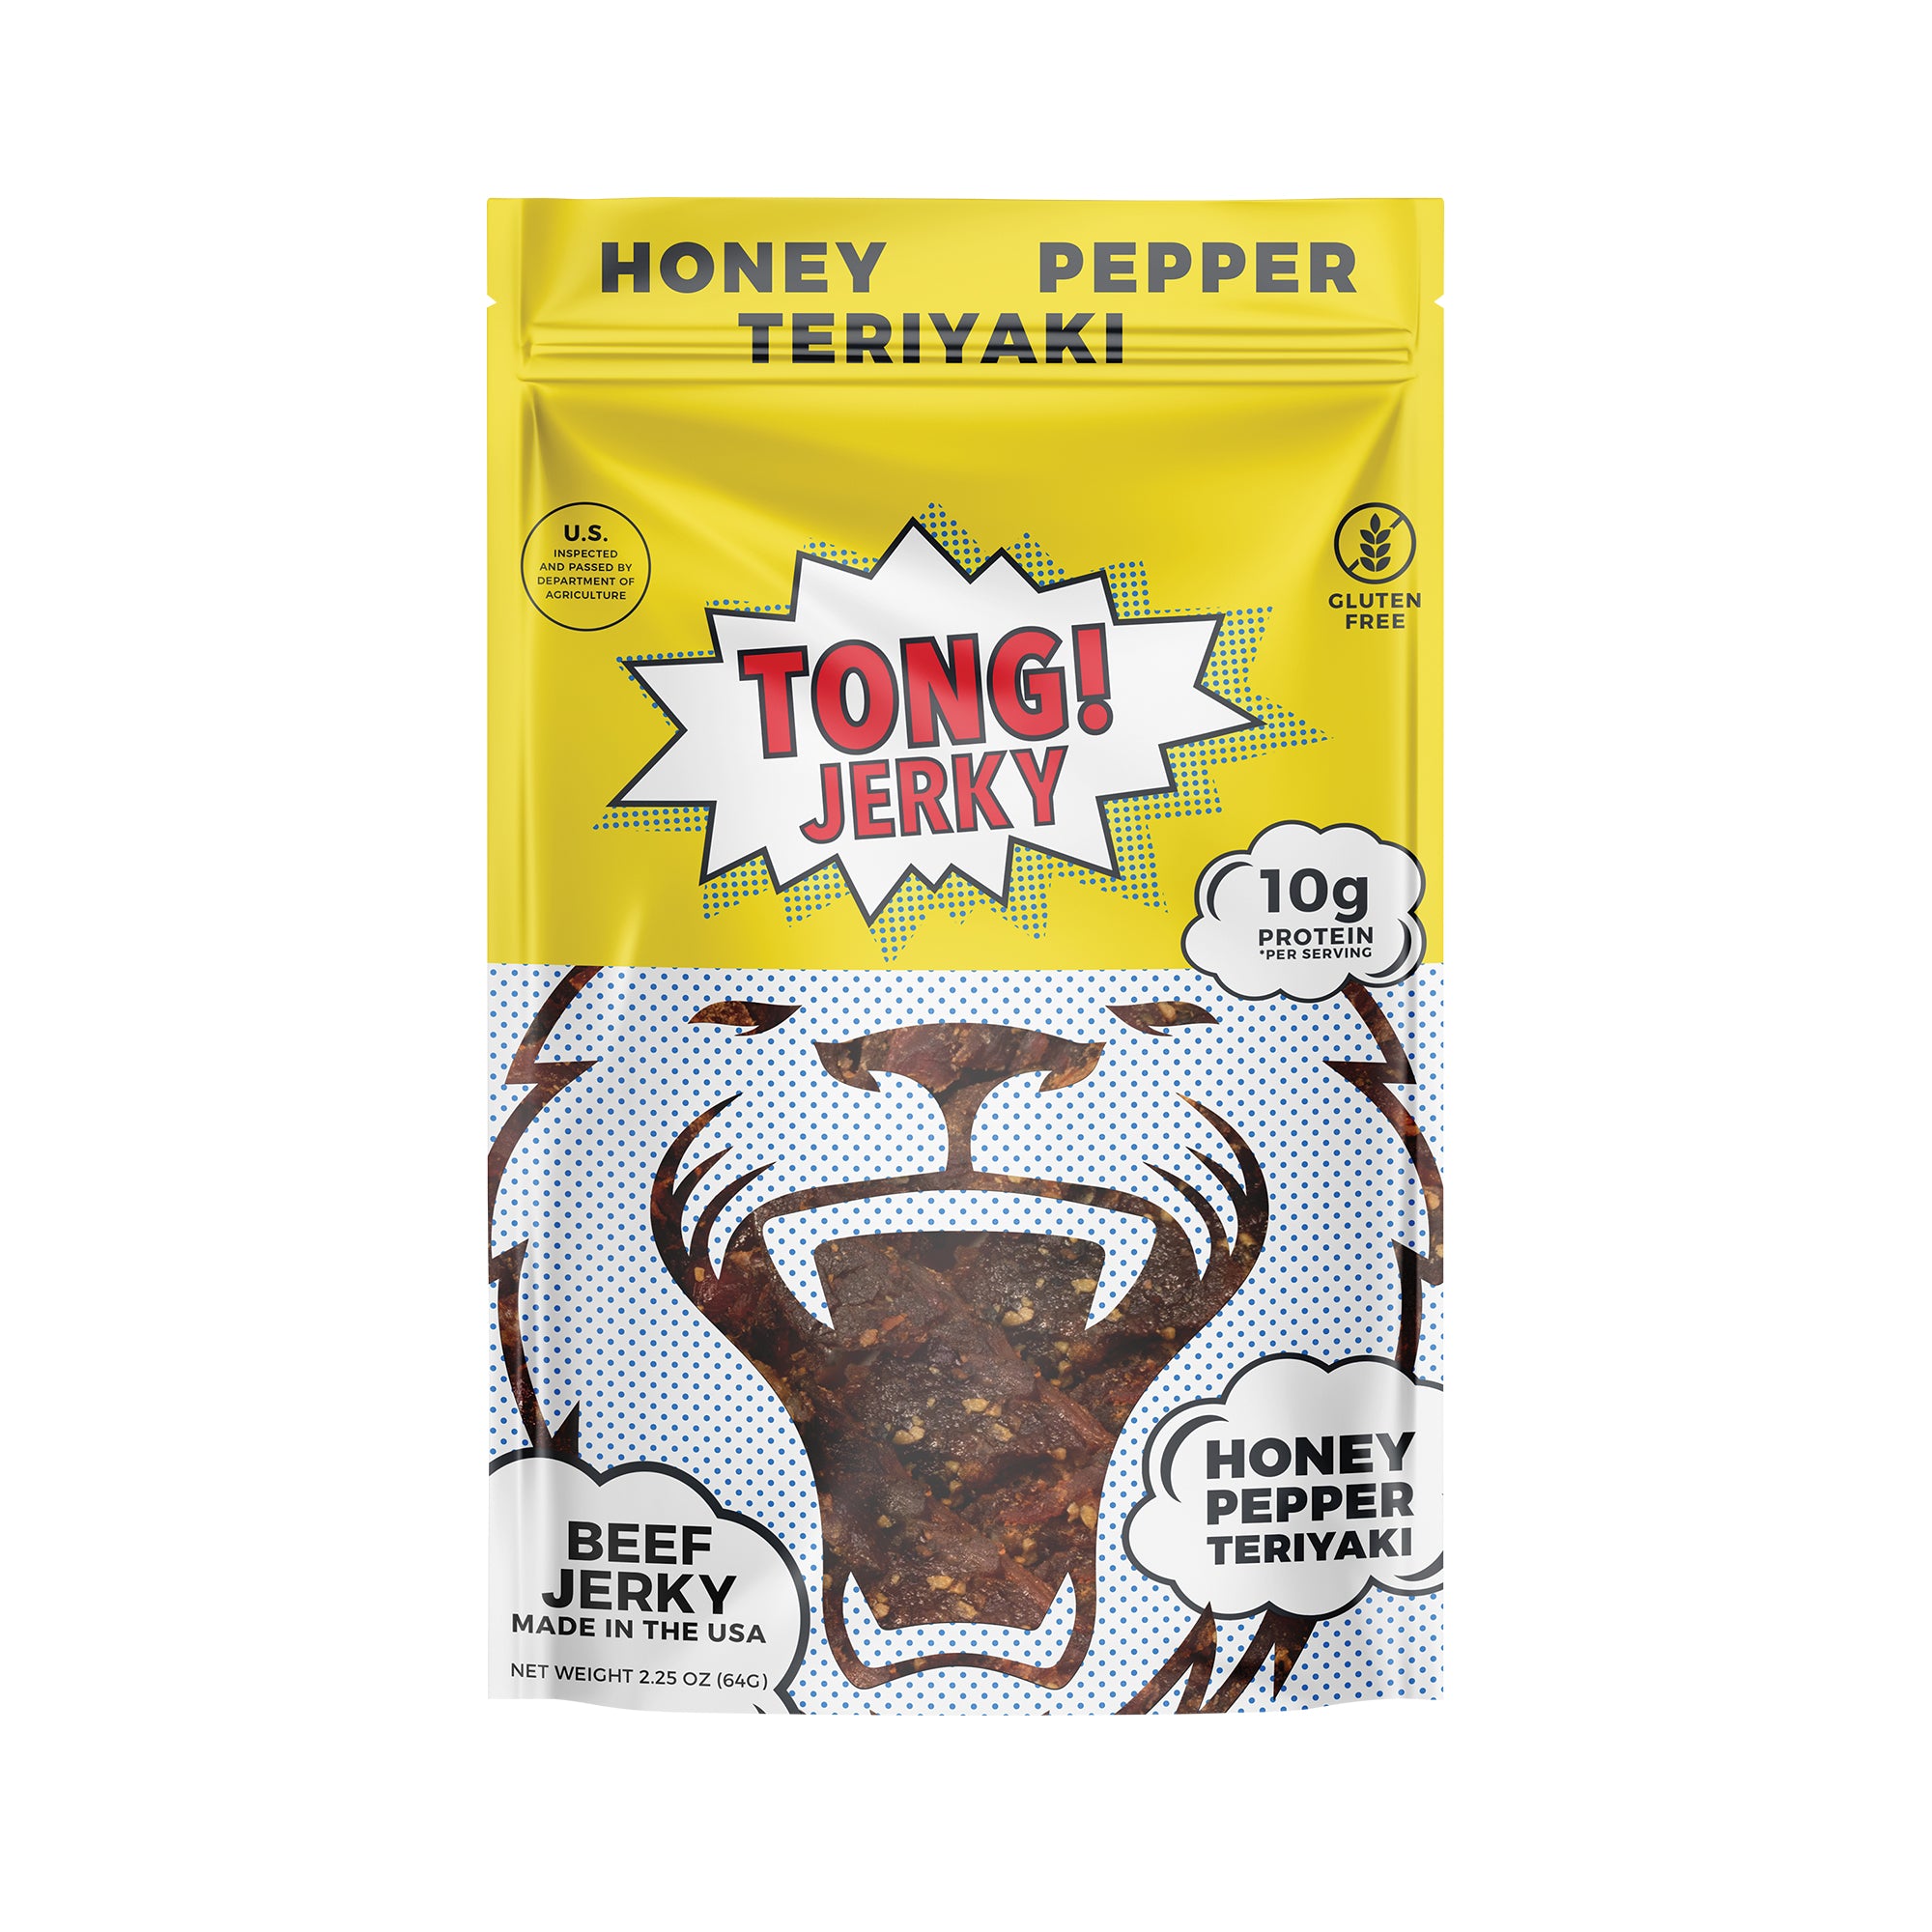 Honey Pepper Teriyaki